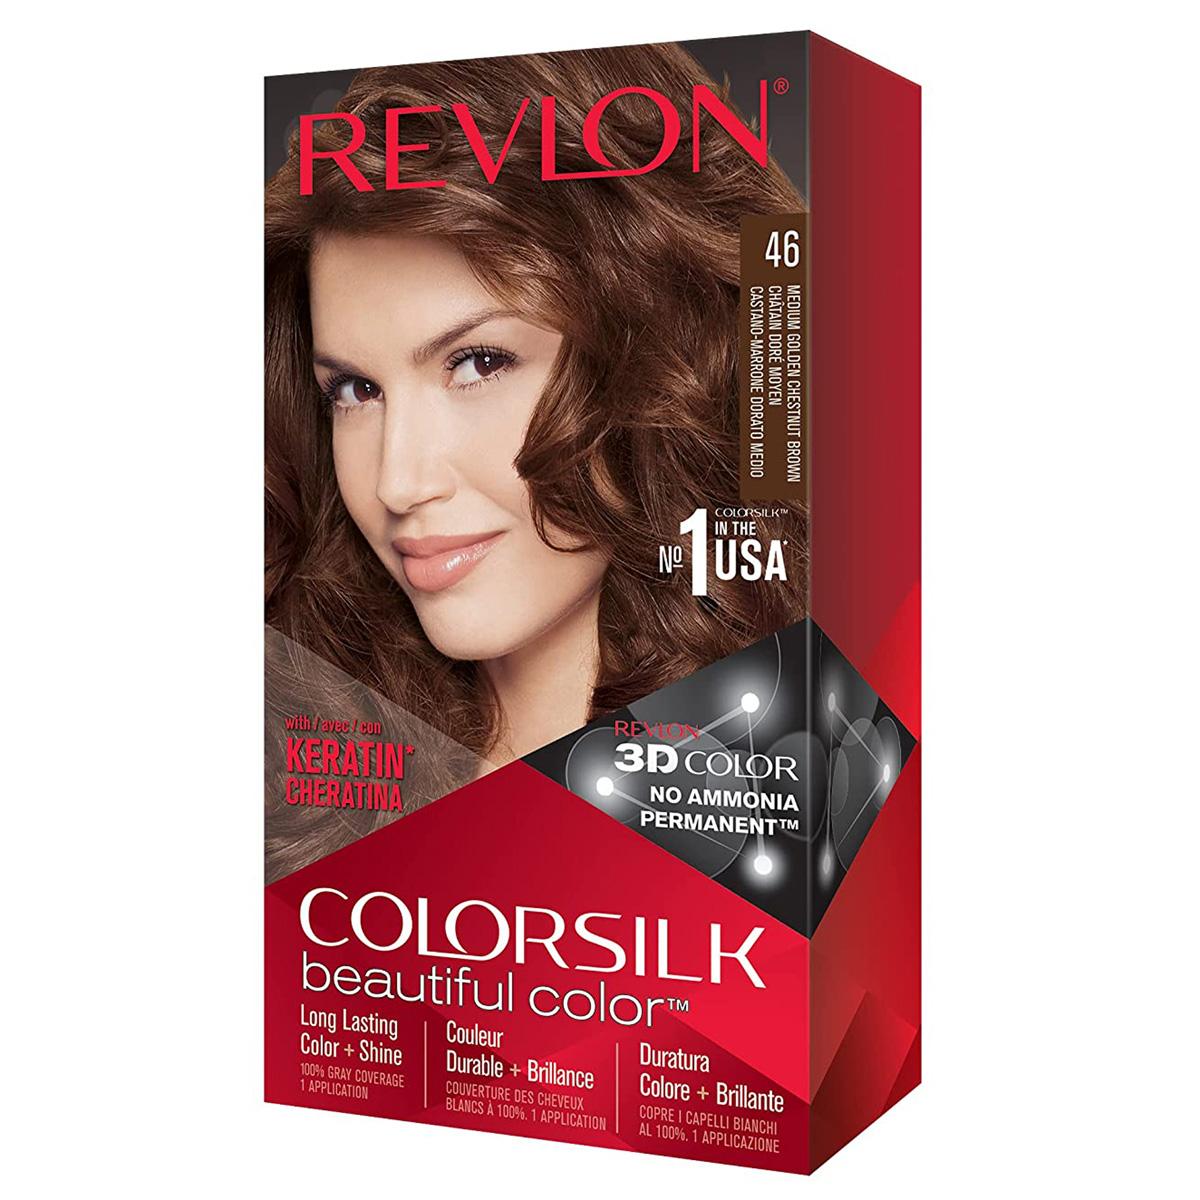 Revlon Colorsilk Chestnut Brown Permanent Hair Dye for $1.31 Shipped